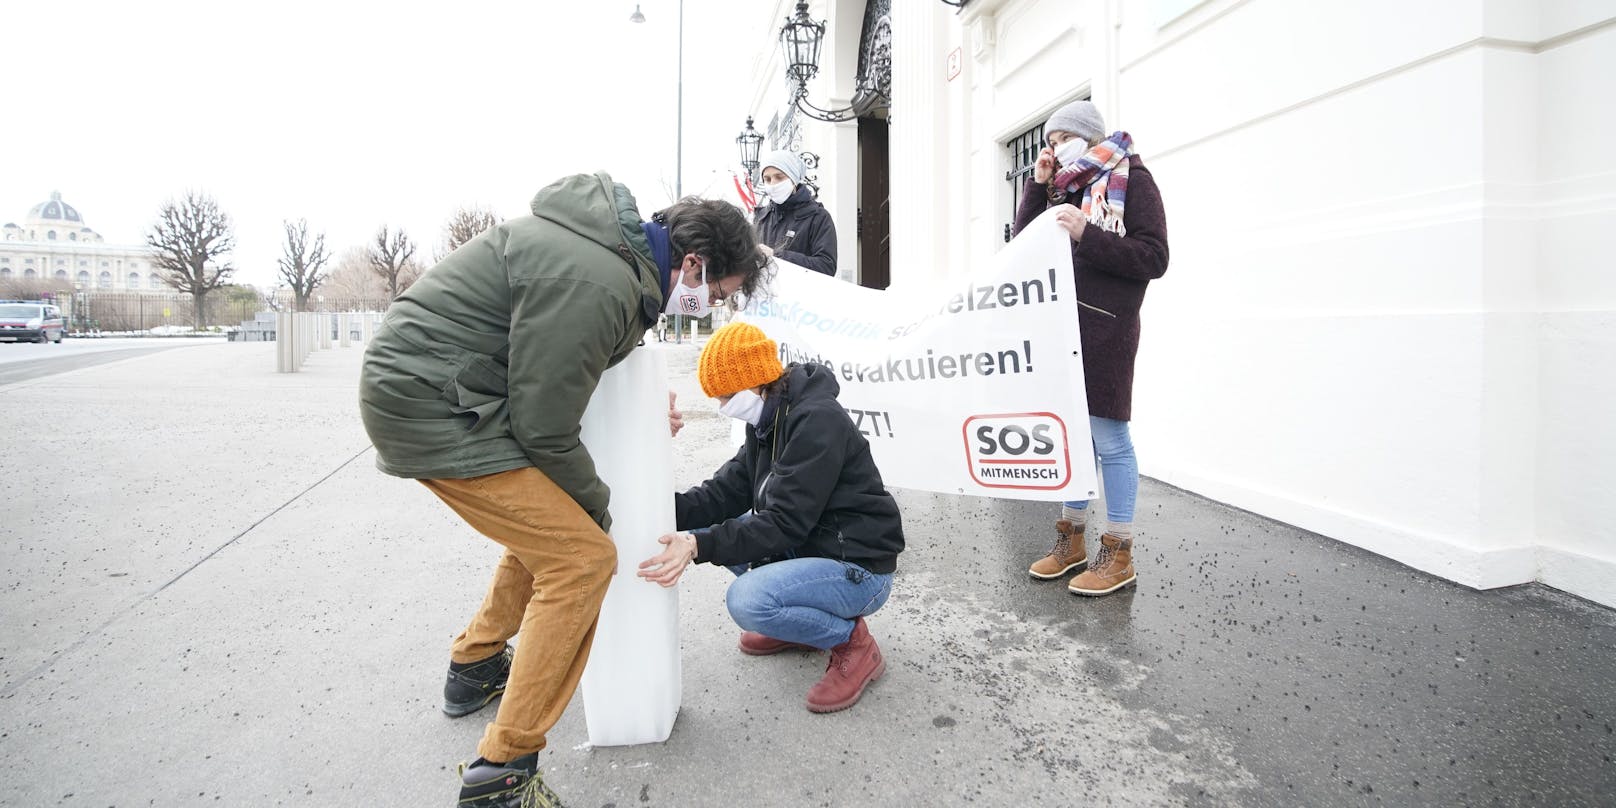 SOS-Mitmensch protestierte vor dem Bundeskanzleramt.